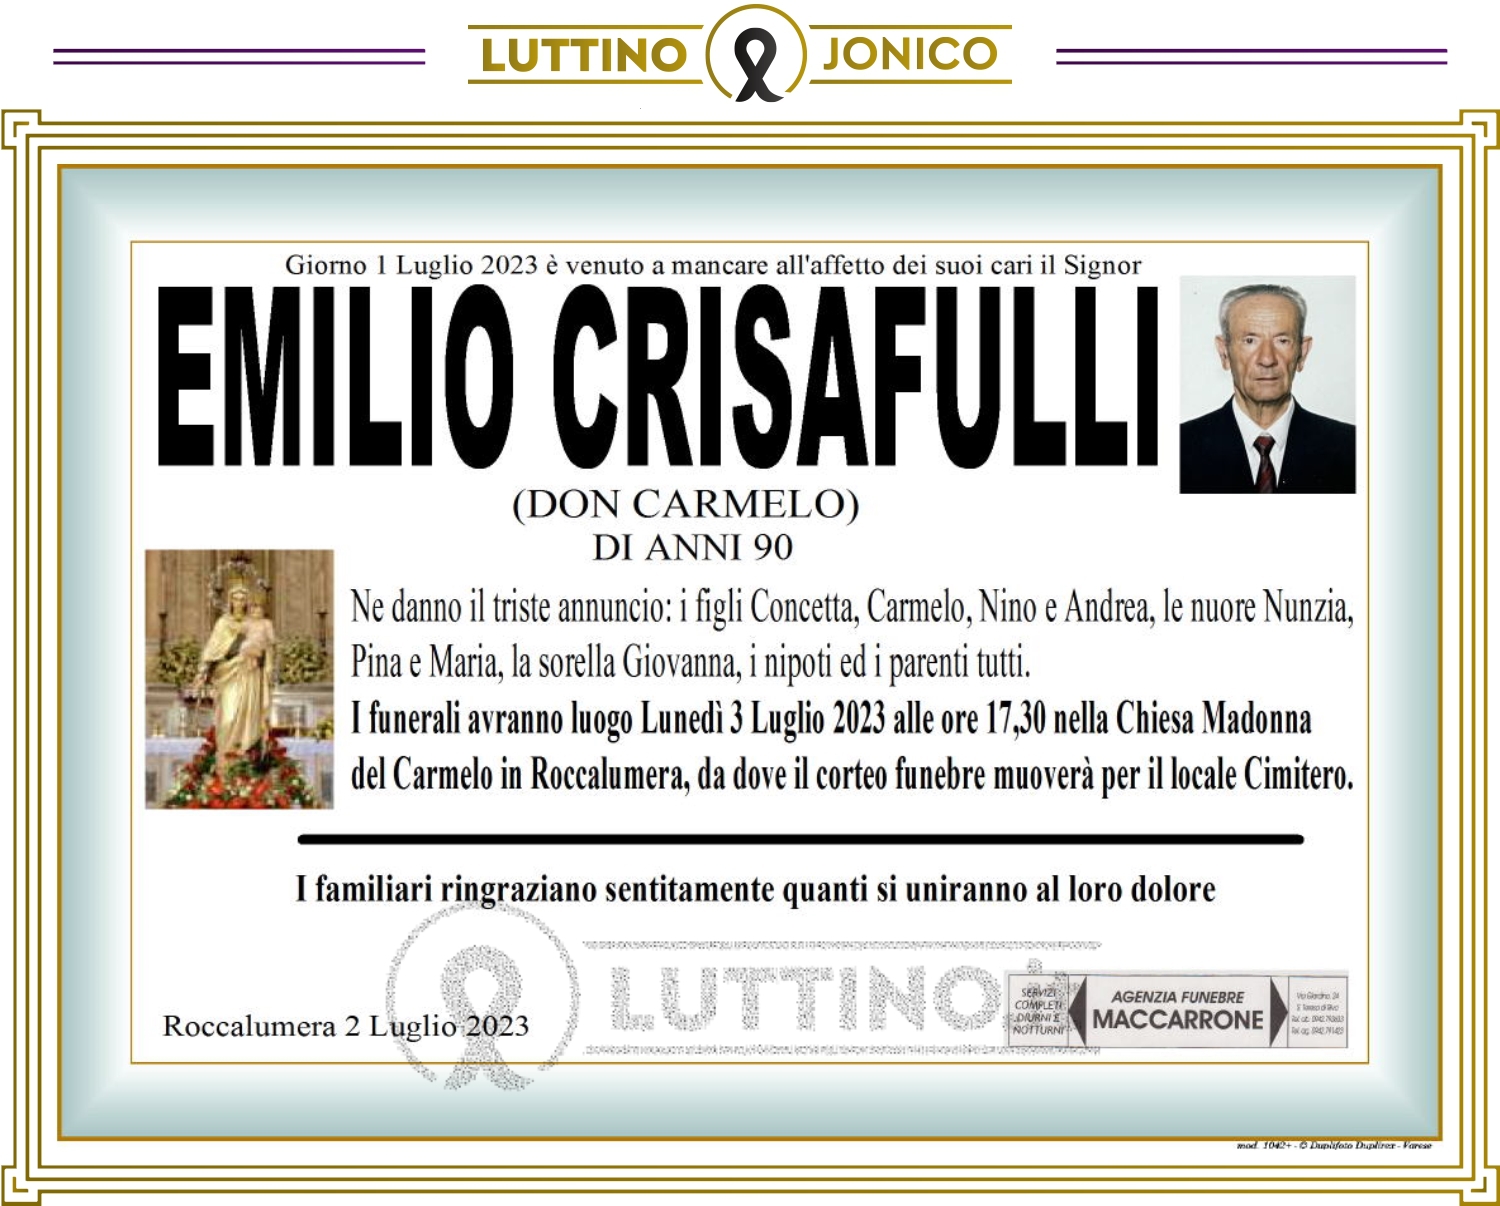 Emilio Crisafulli